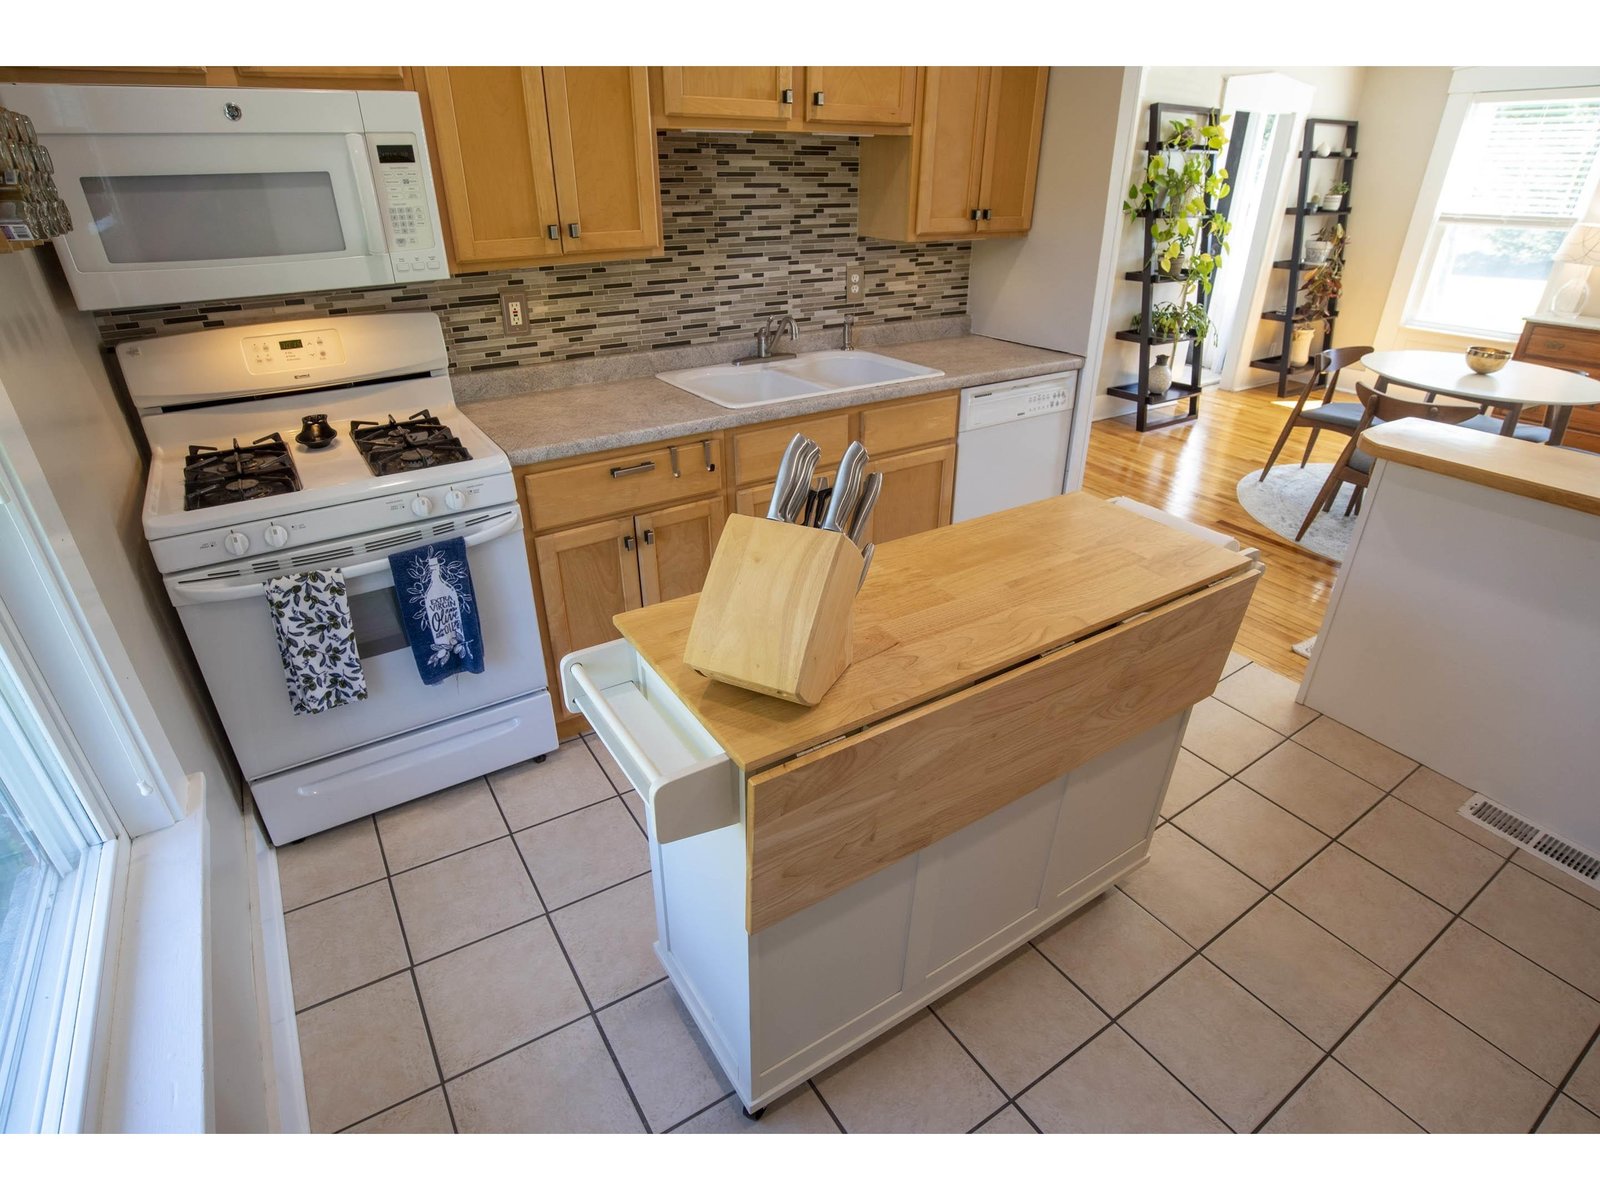 Modern Kitchen with Tile Flooring & Backsplash